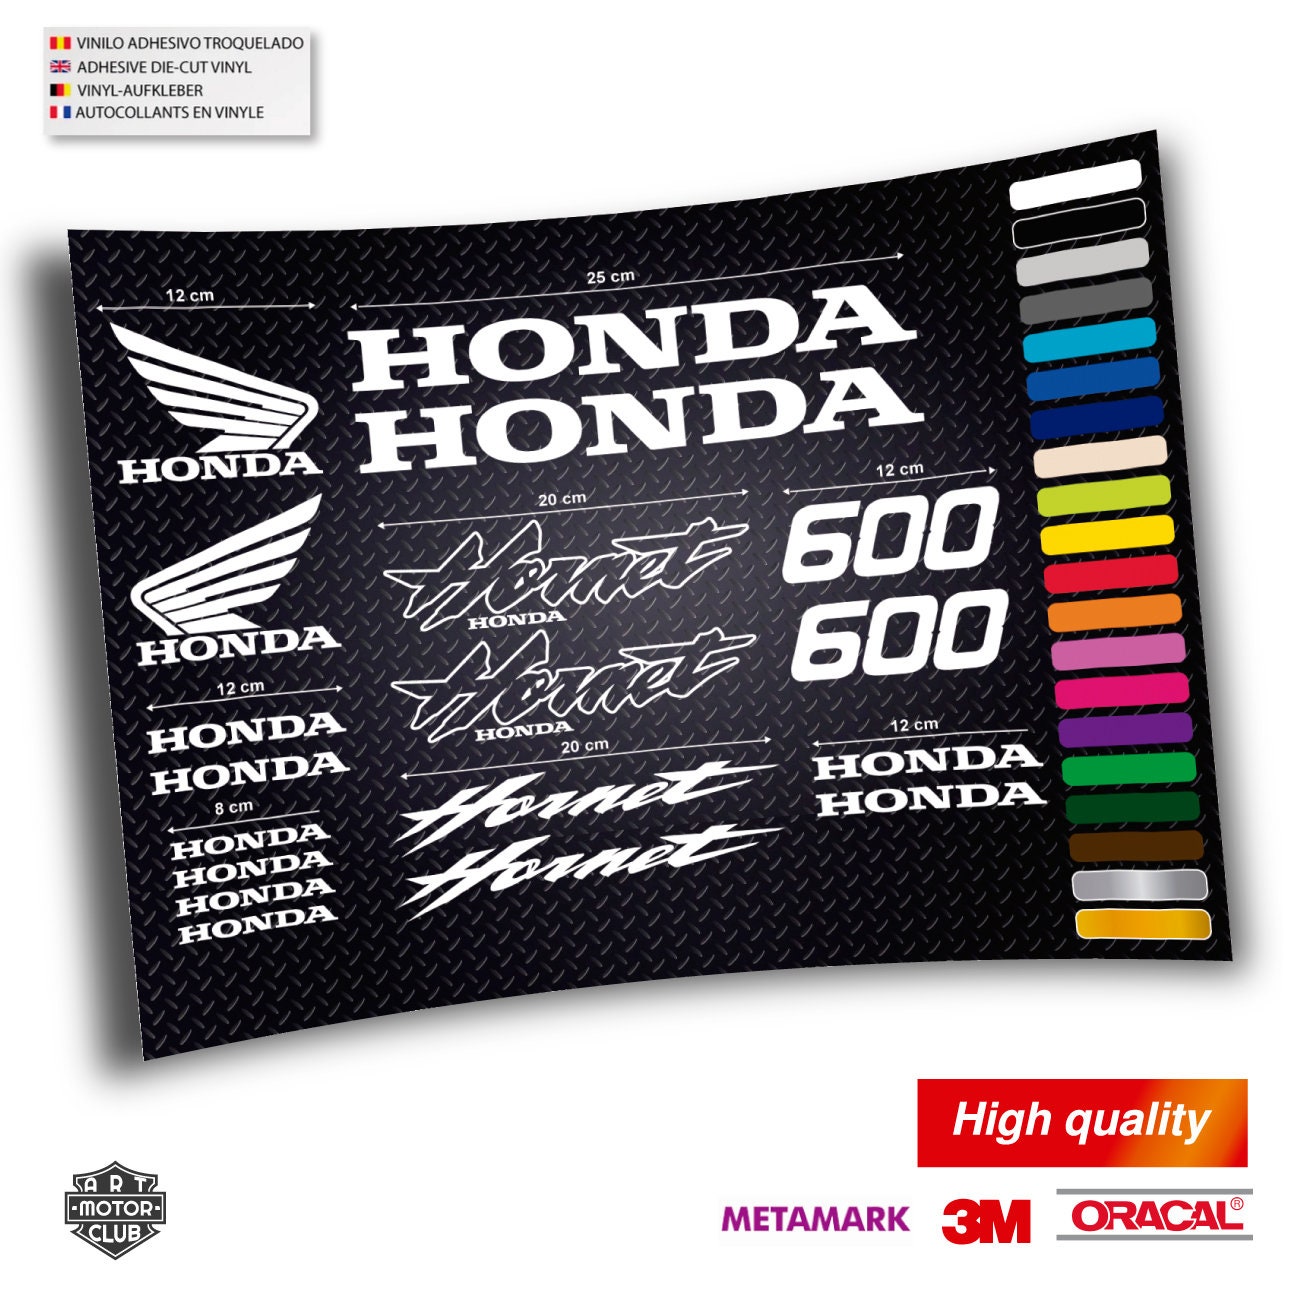 Honda hornet 600 for sale  